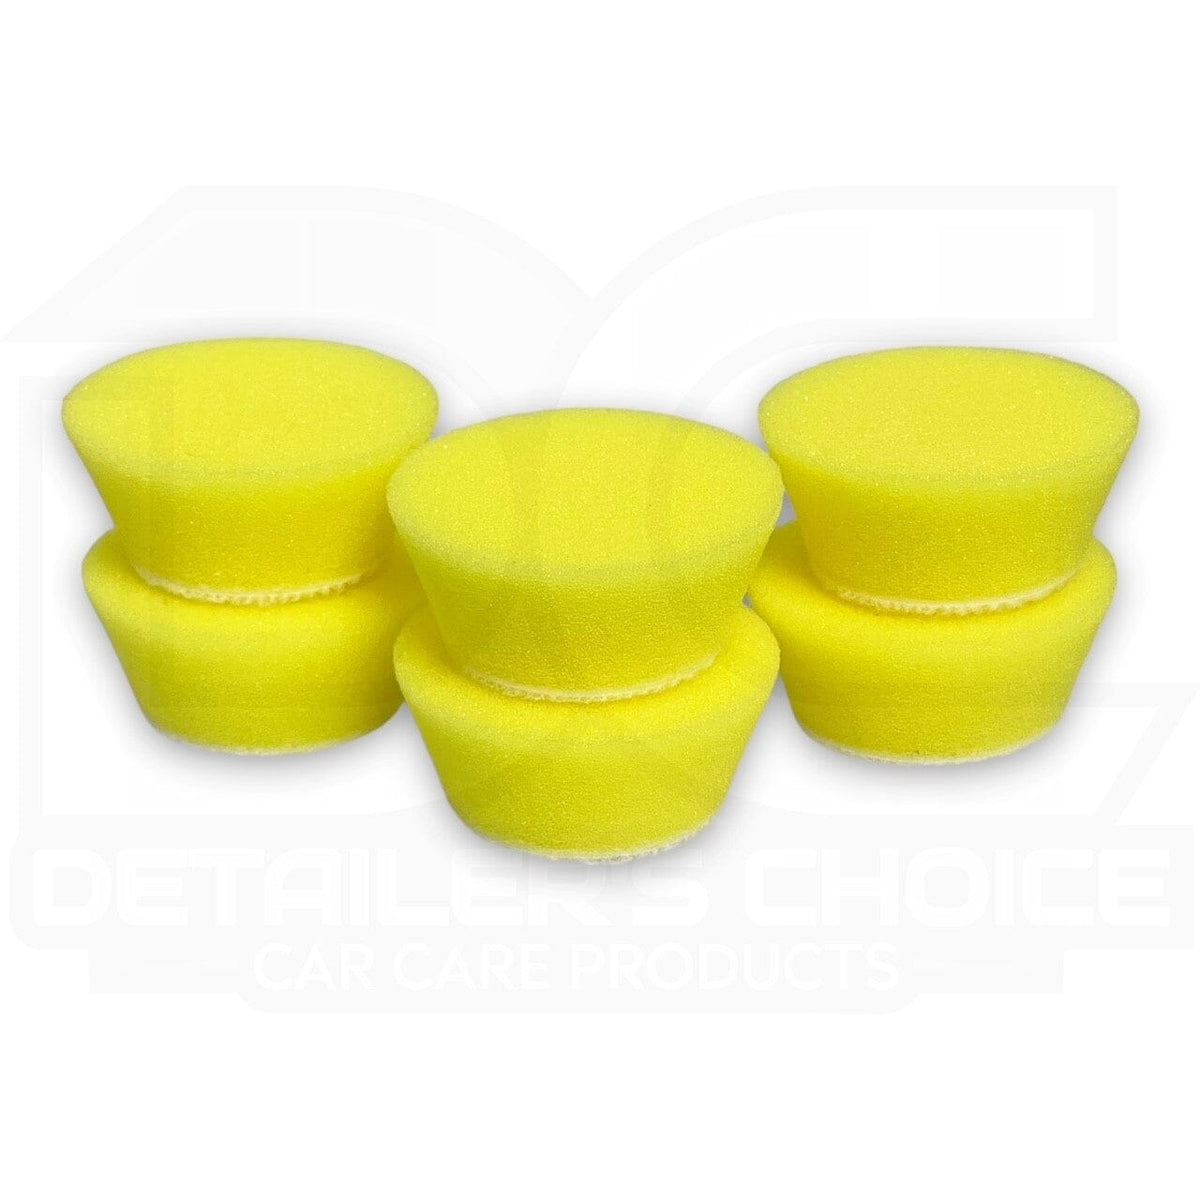 Buff and Shine® 134BN Uro-Tec 1-Inch Yellow Polishing Foam Pad - 6 Pac —  Detailers Choice Car Care